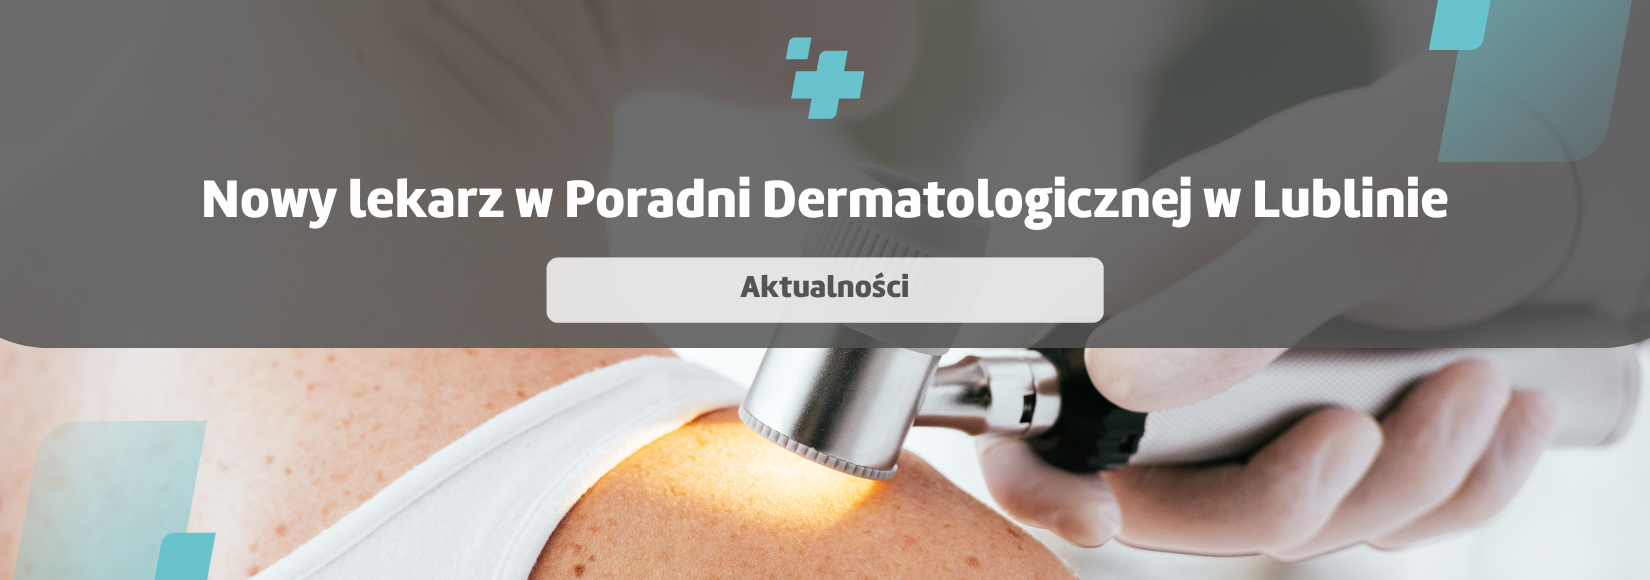 Nowy lekarz w Poradni Dermatologicznej w Lublinie 